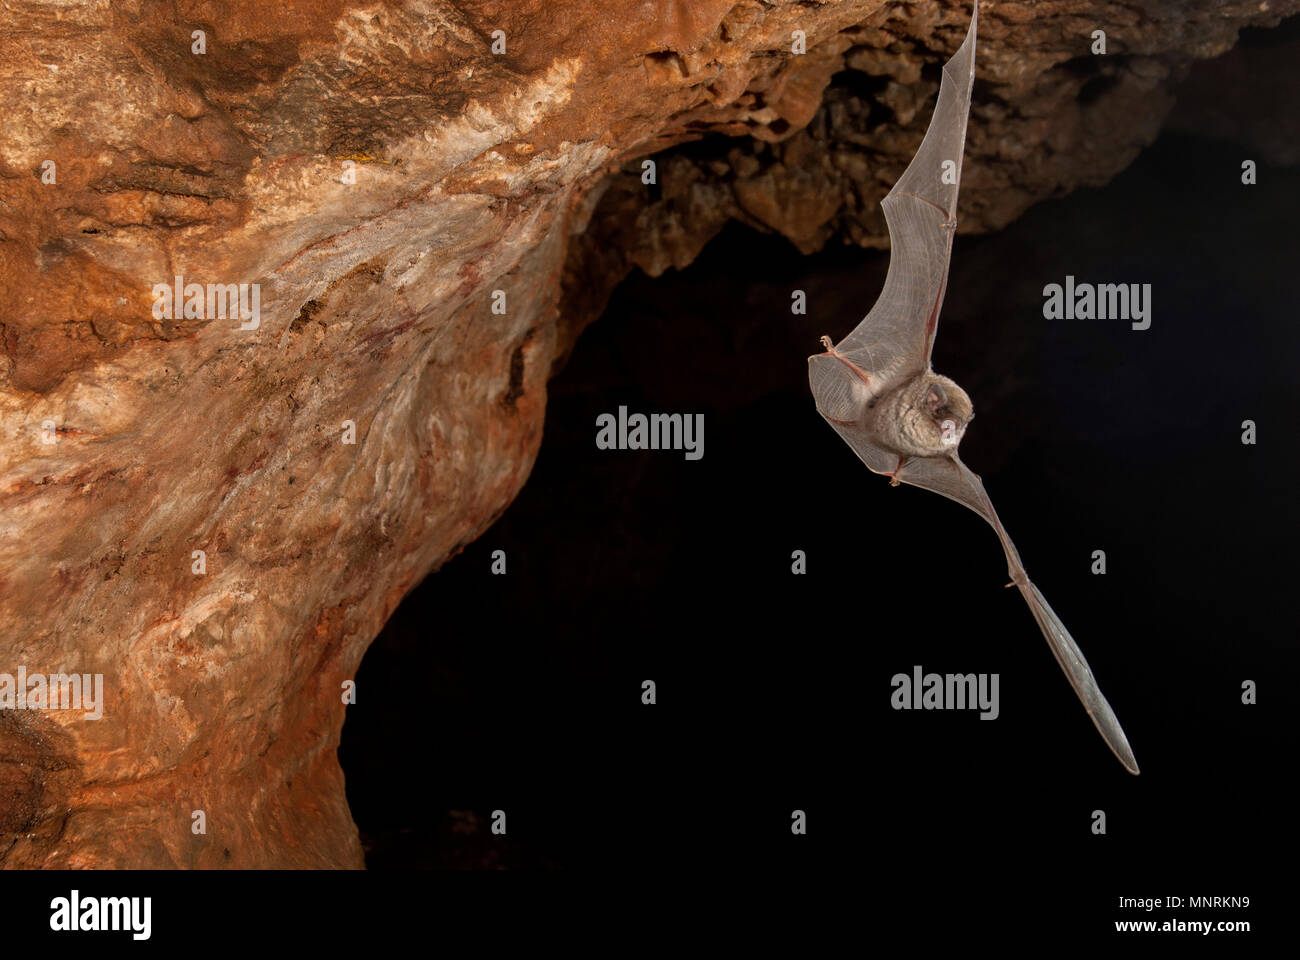 Bat-comune piegata miniopterus schreibersii, volare in una grotta Foto Stock